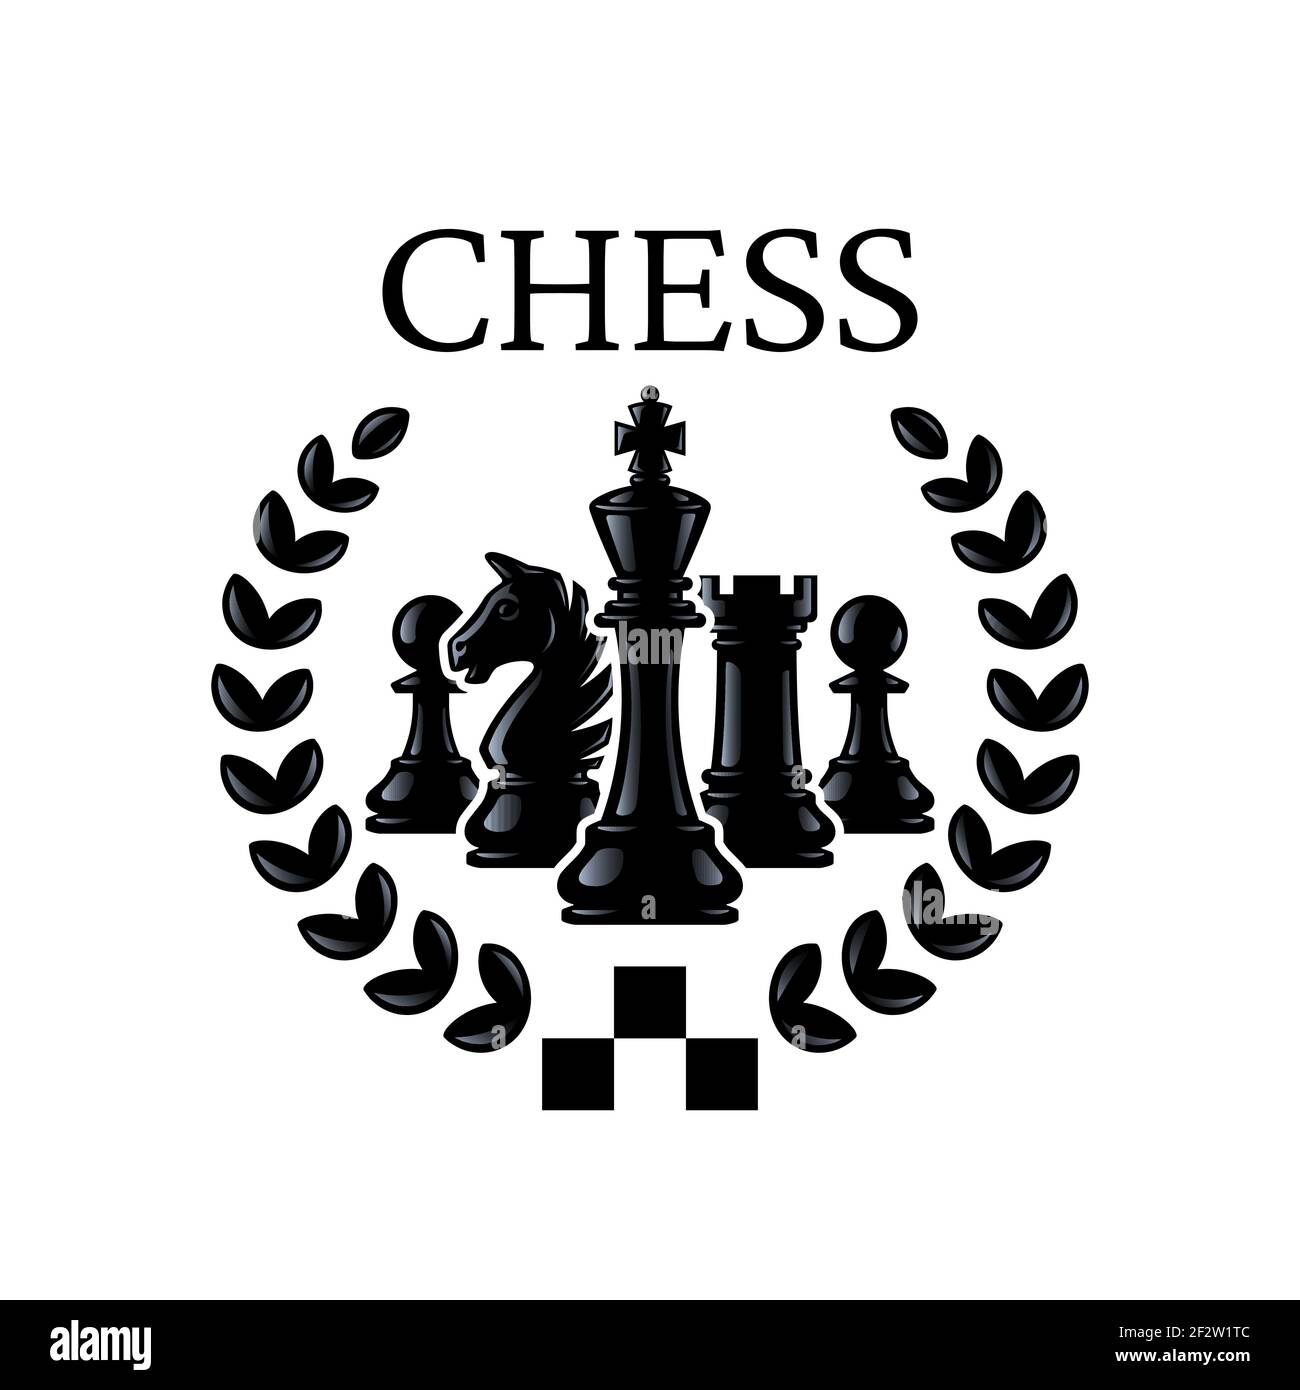 Go-Emblem. Schachfiguren König, Ritter, Rook, Bauern mit Kranz. Silhouetten von Schachfiguren. Vektorgrafik isoliert auf Weiß. Stock Vektor